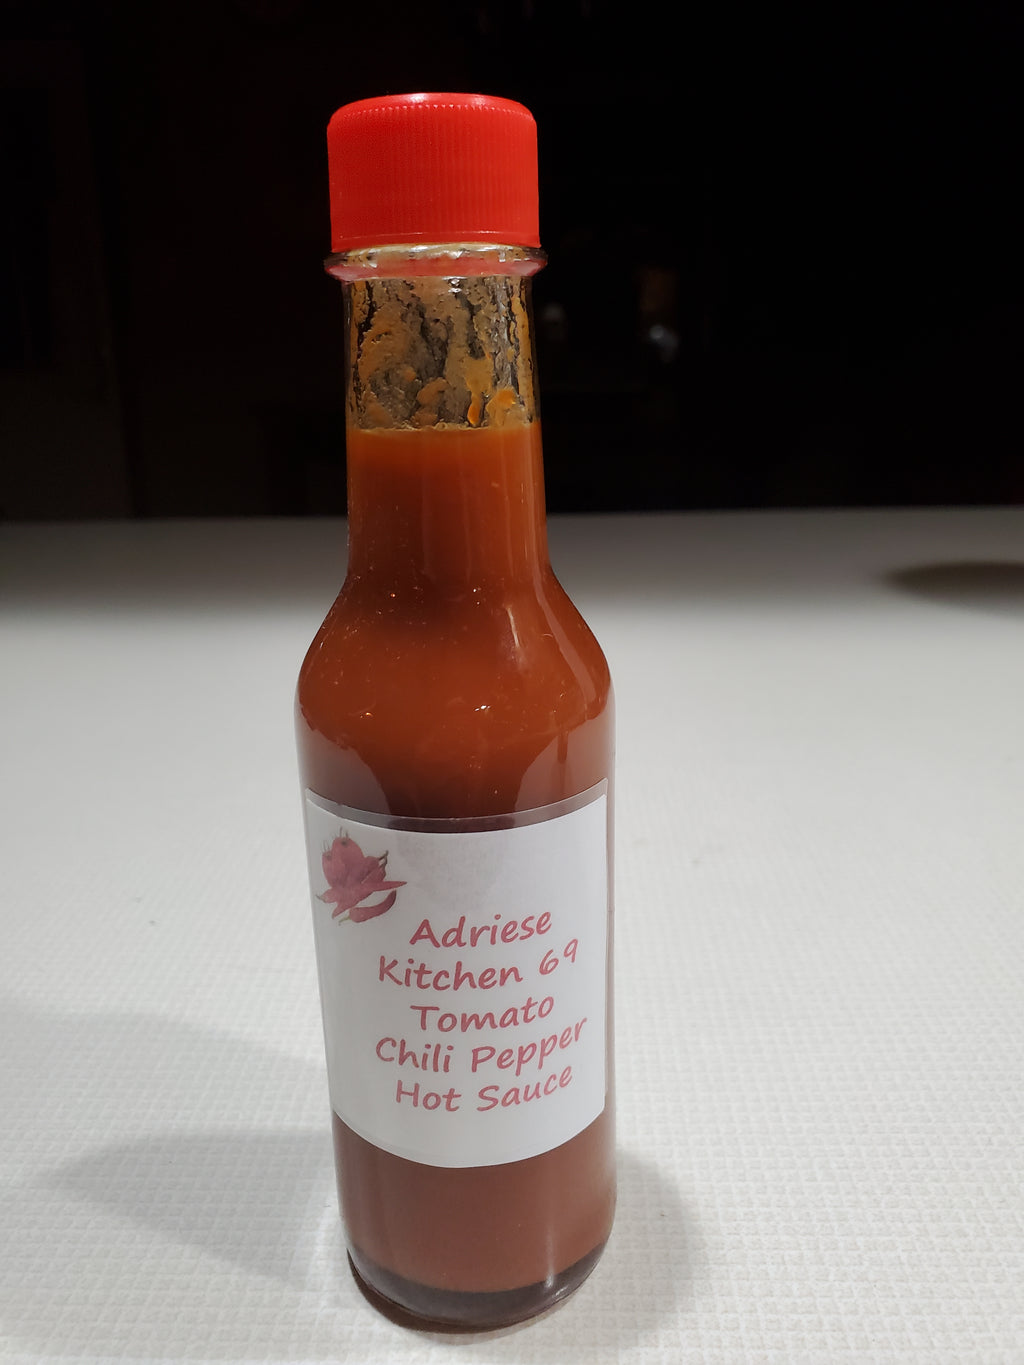 Adriese Kitchen 69 Hot Sauce